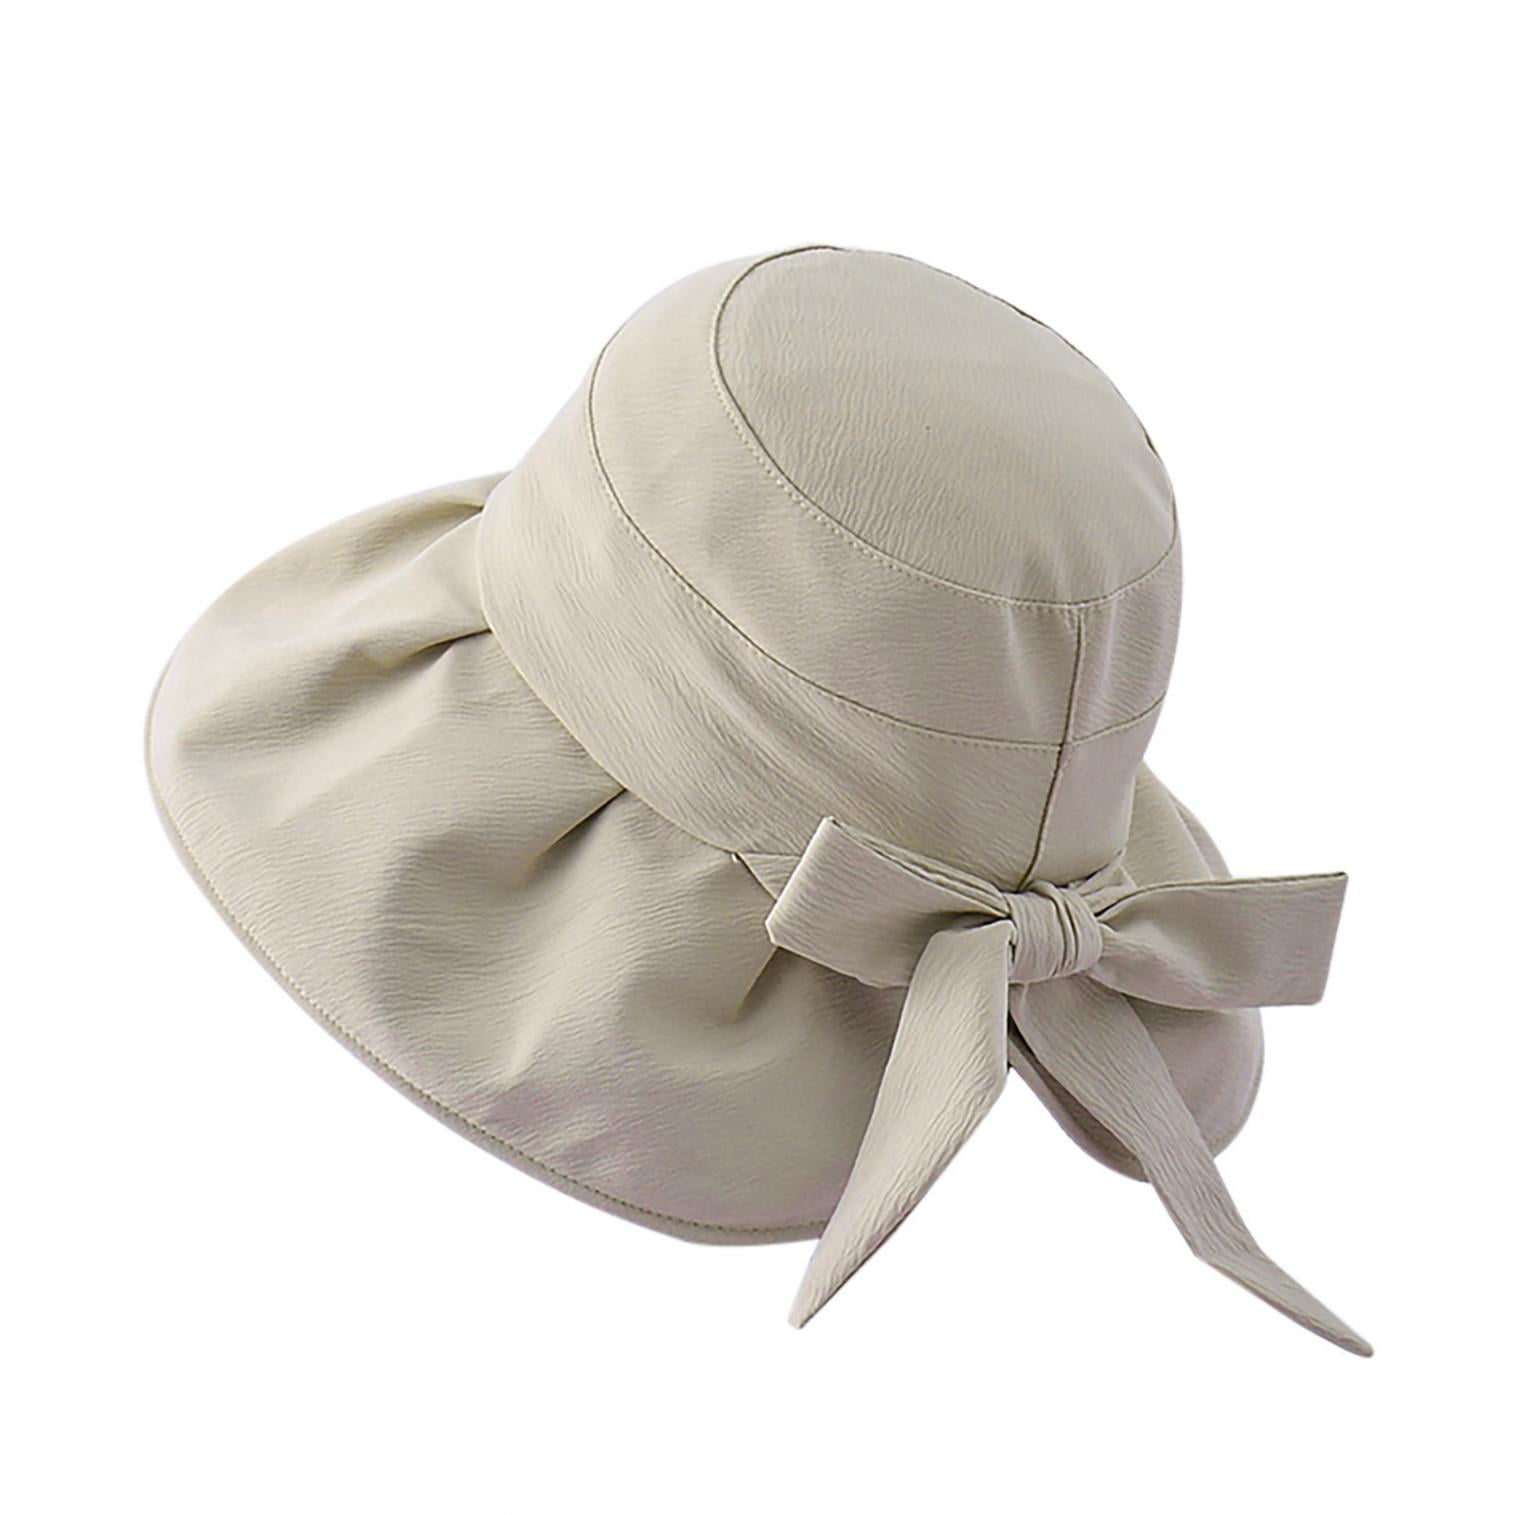 Cotton Bucket Hats for Women,Summer Beach Sun Cloth Hat Teens Girls Outdoor  Fishmen Cap Packable UPF 50+ 